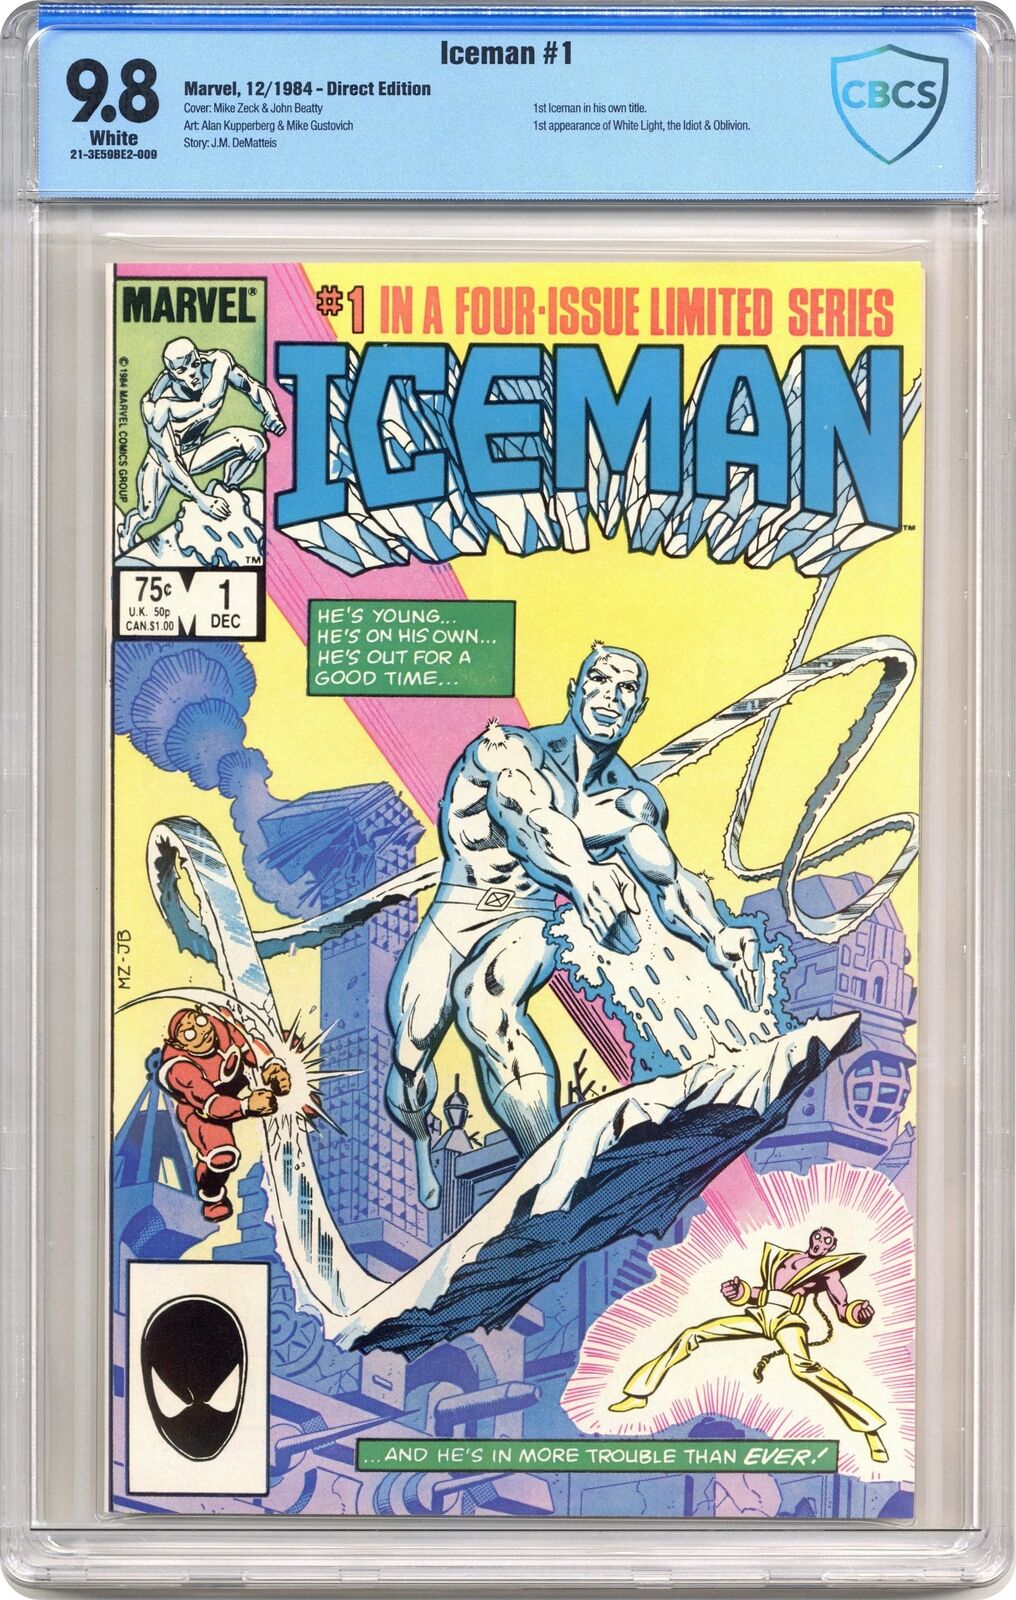 Iceman #1 CBCS 9.8 1984 21-3E59BE2-009